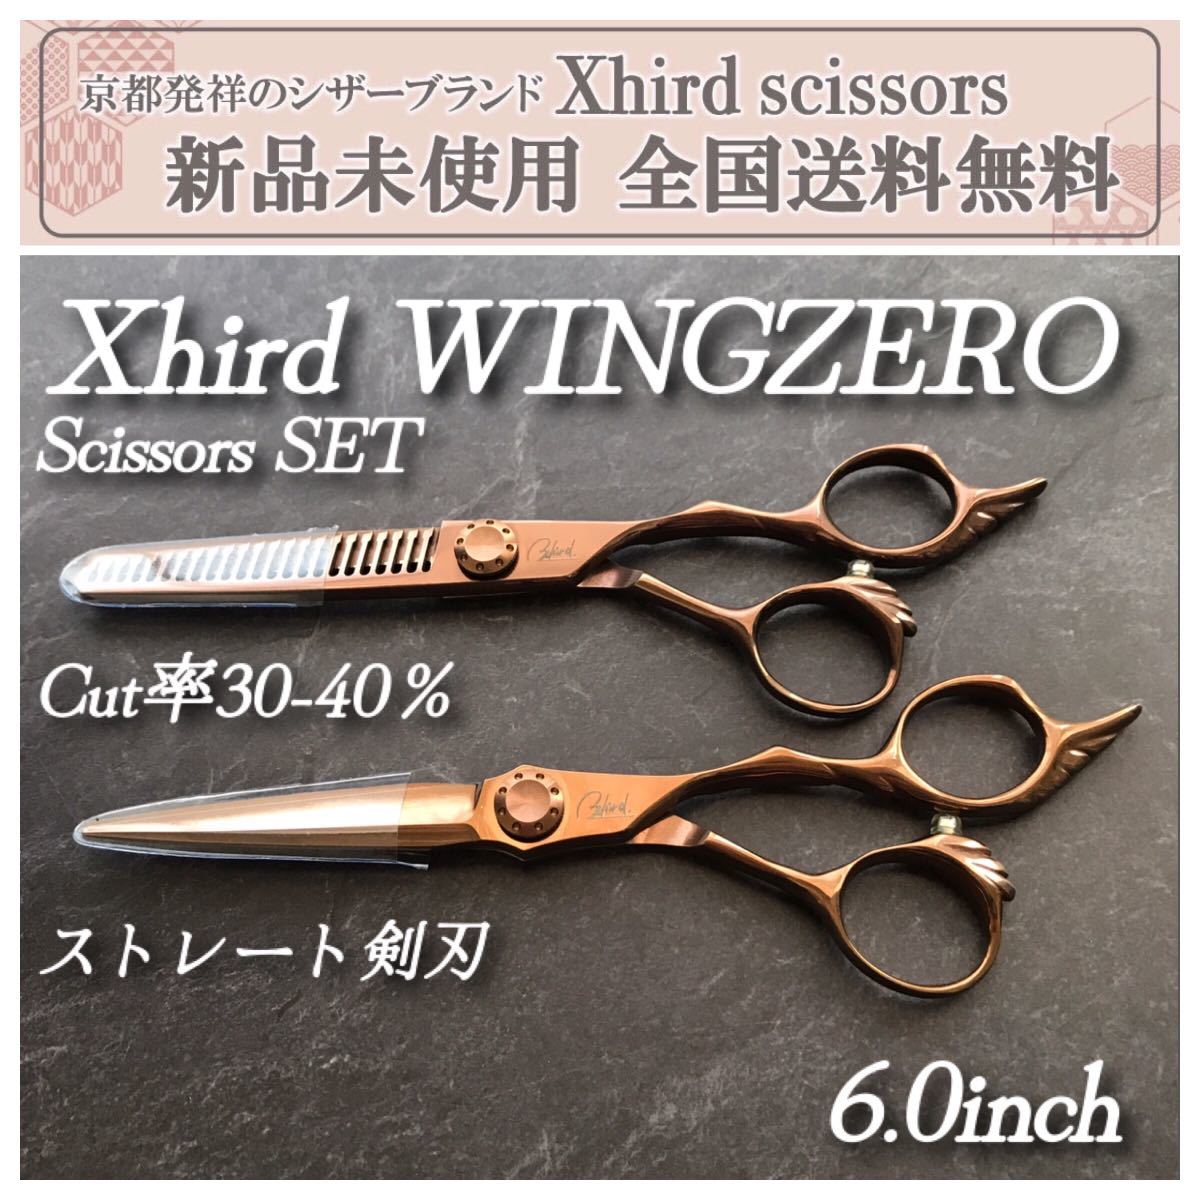 新品】XhirdWING ブラントシザーSET 【各6.0inch】Cut率30-40％ ハサミ